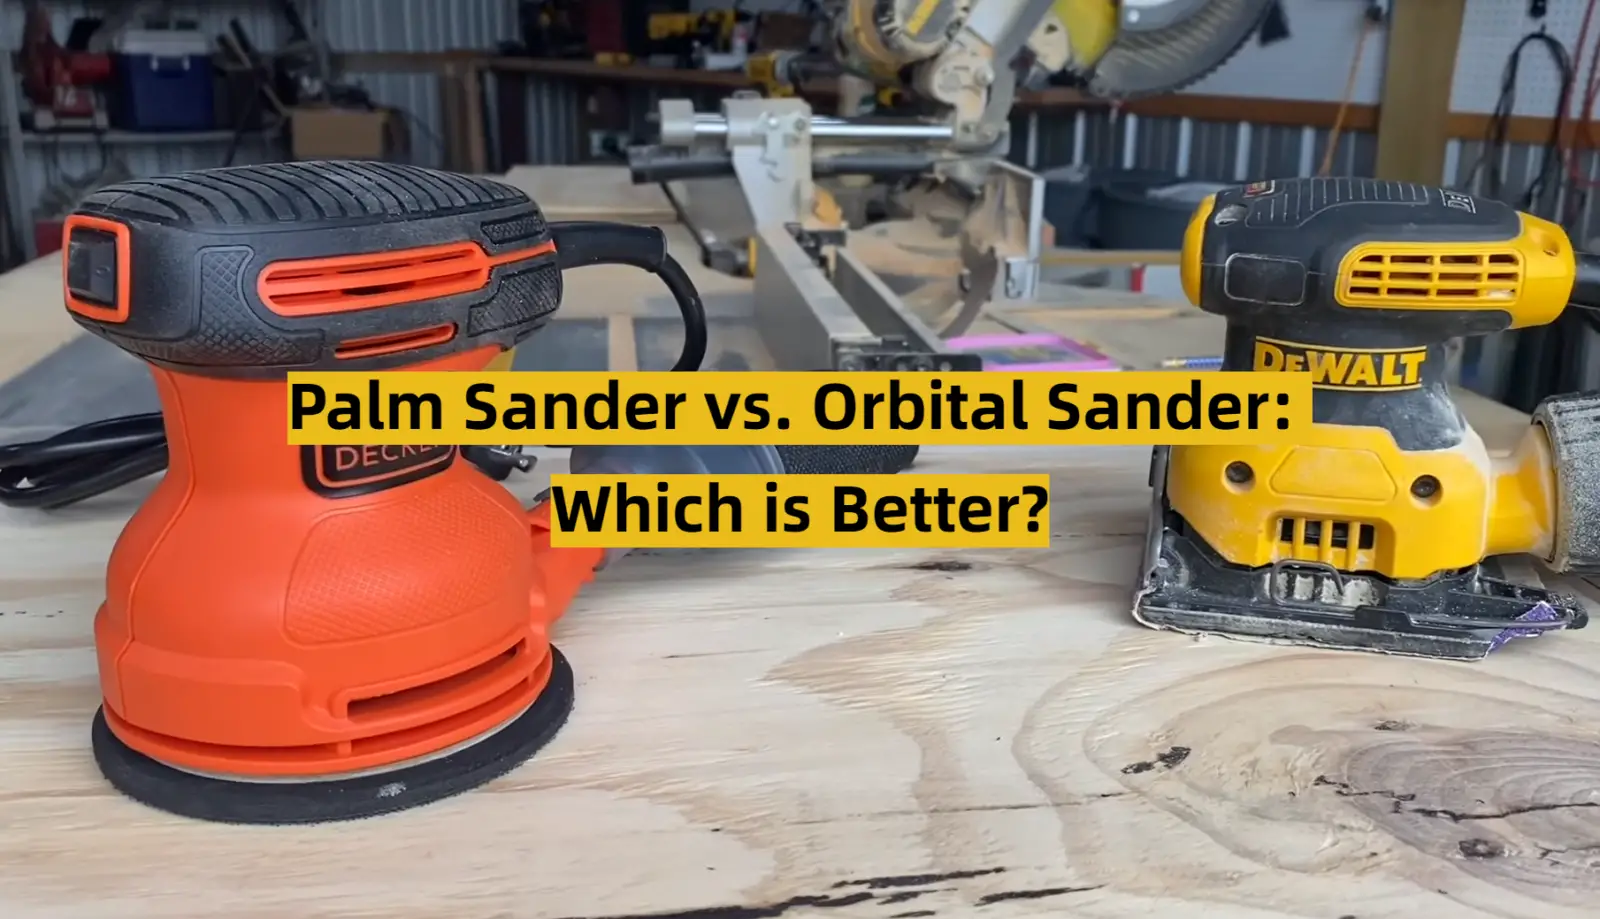 Palm Sander vs. Orbital Sander: Which is Better?